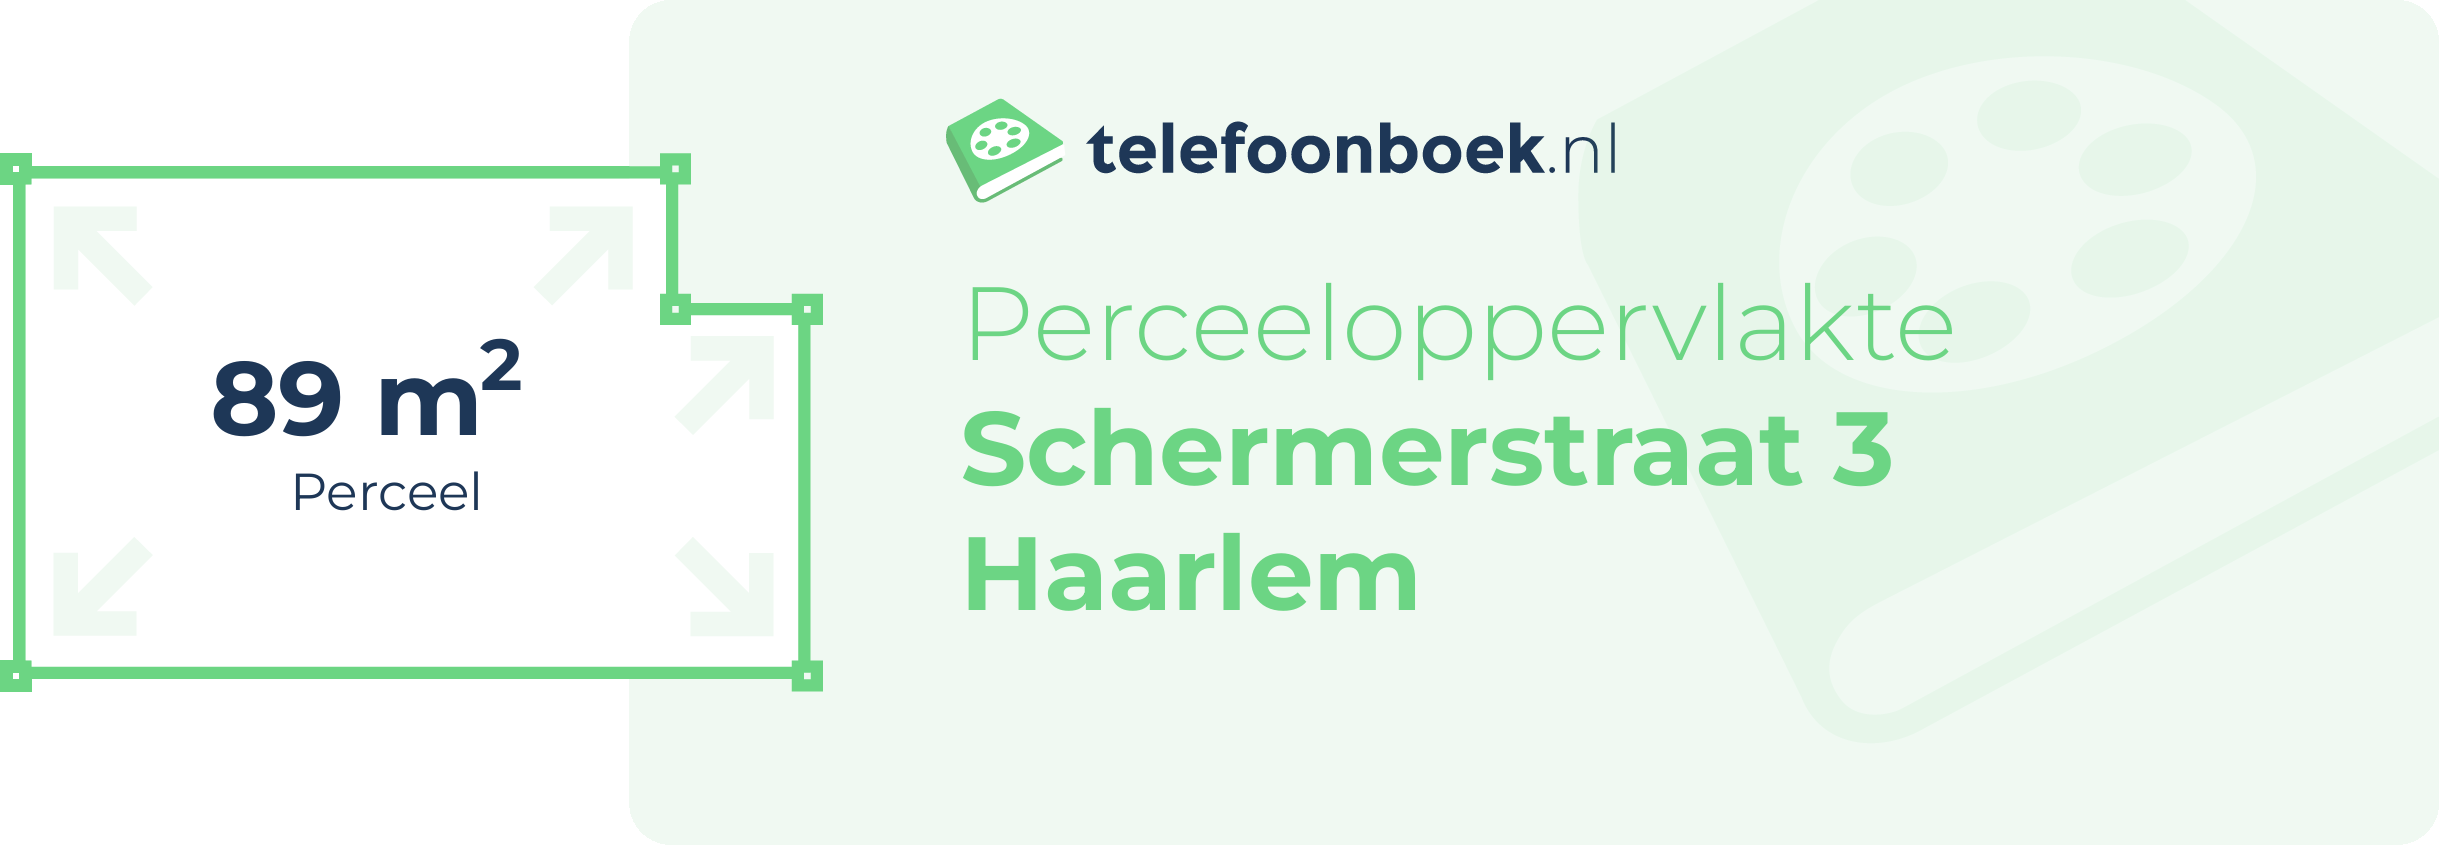 Perceeloppervlakte Schermerstraat 3 Haarlem